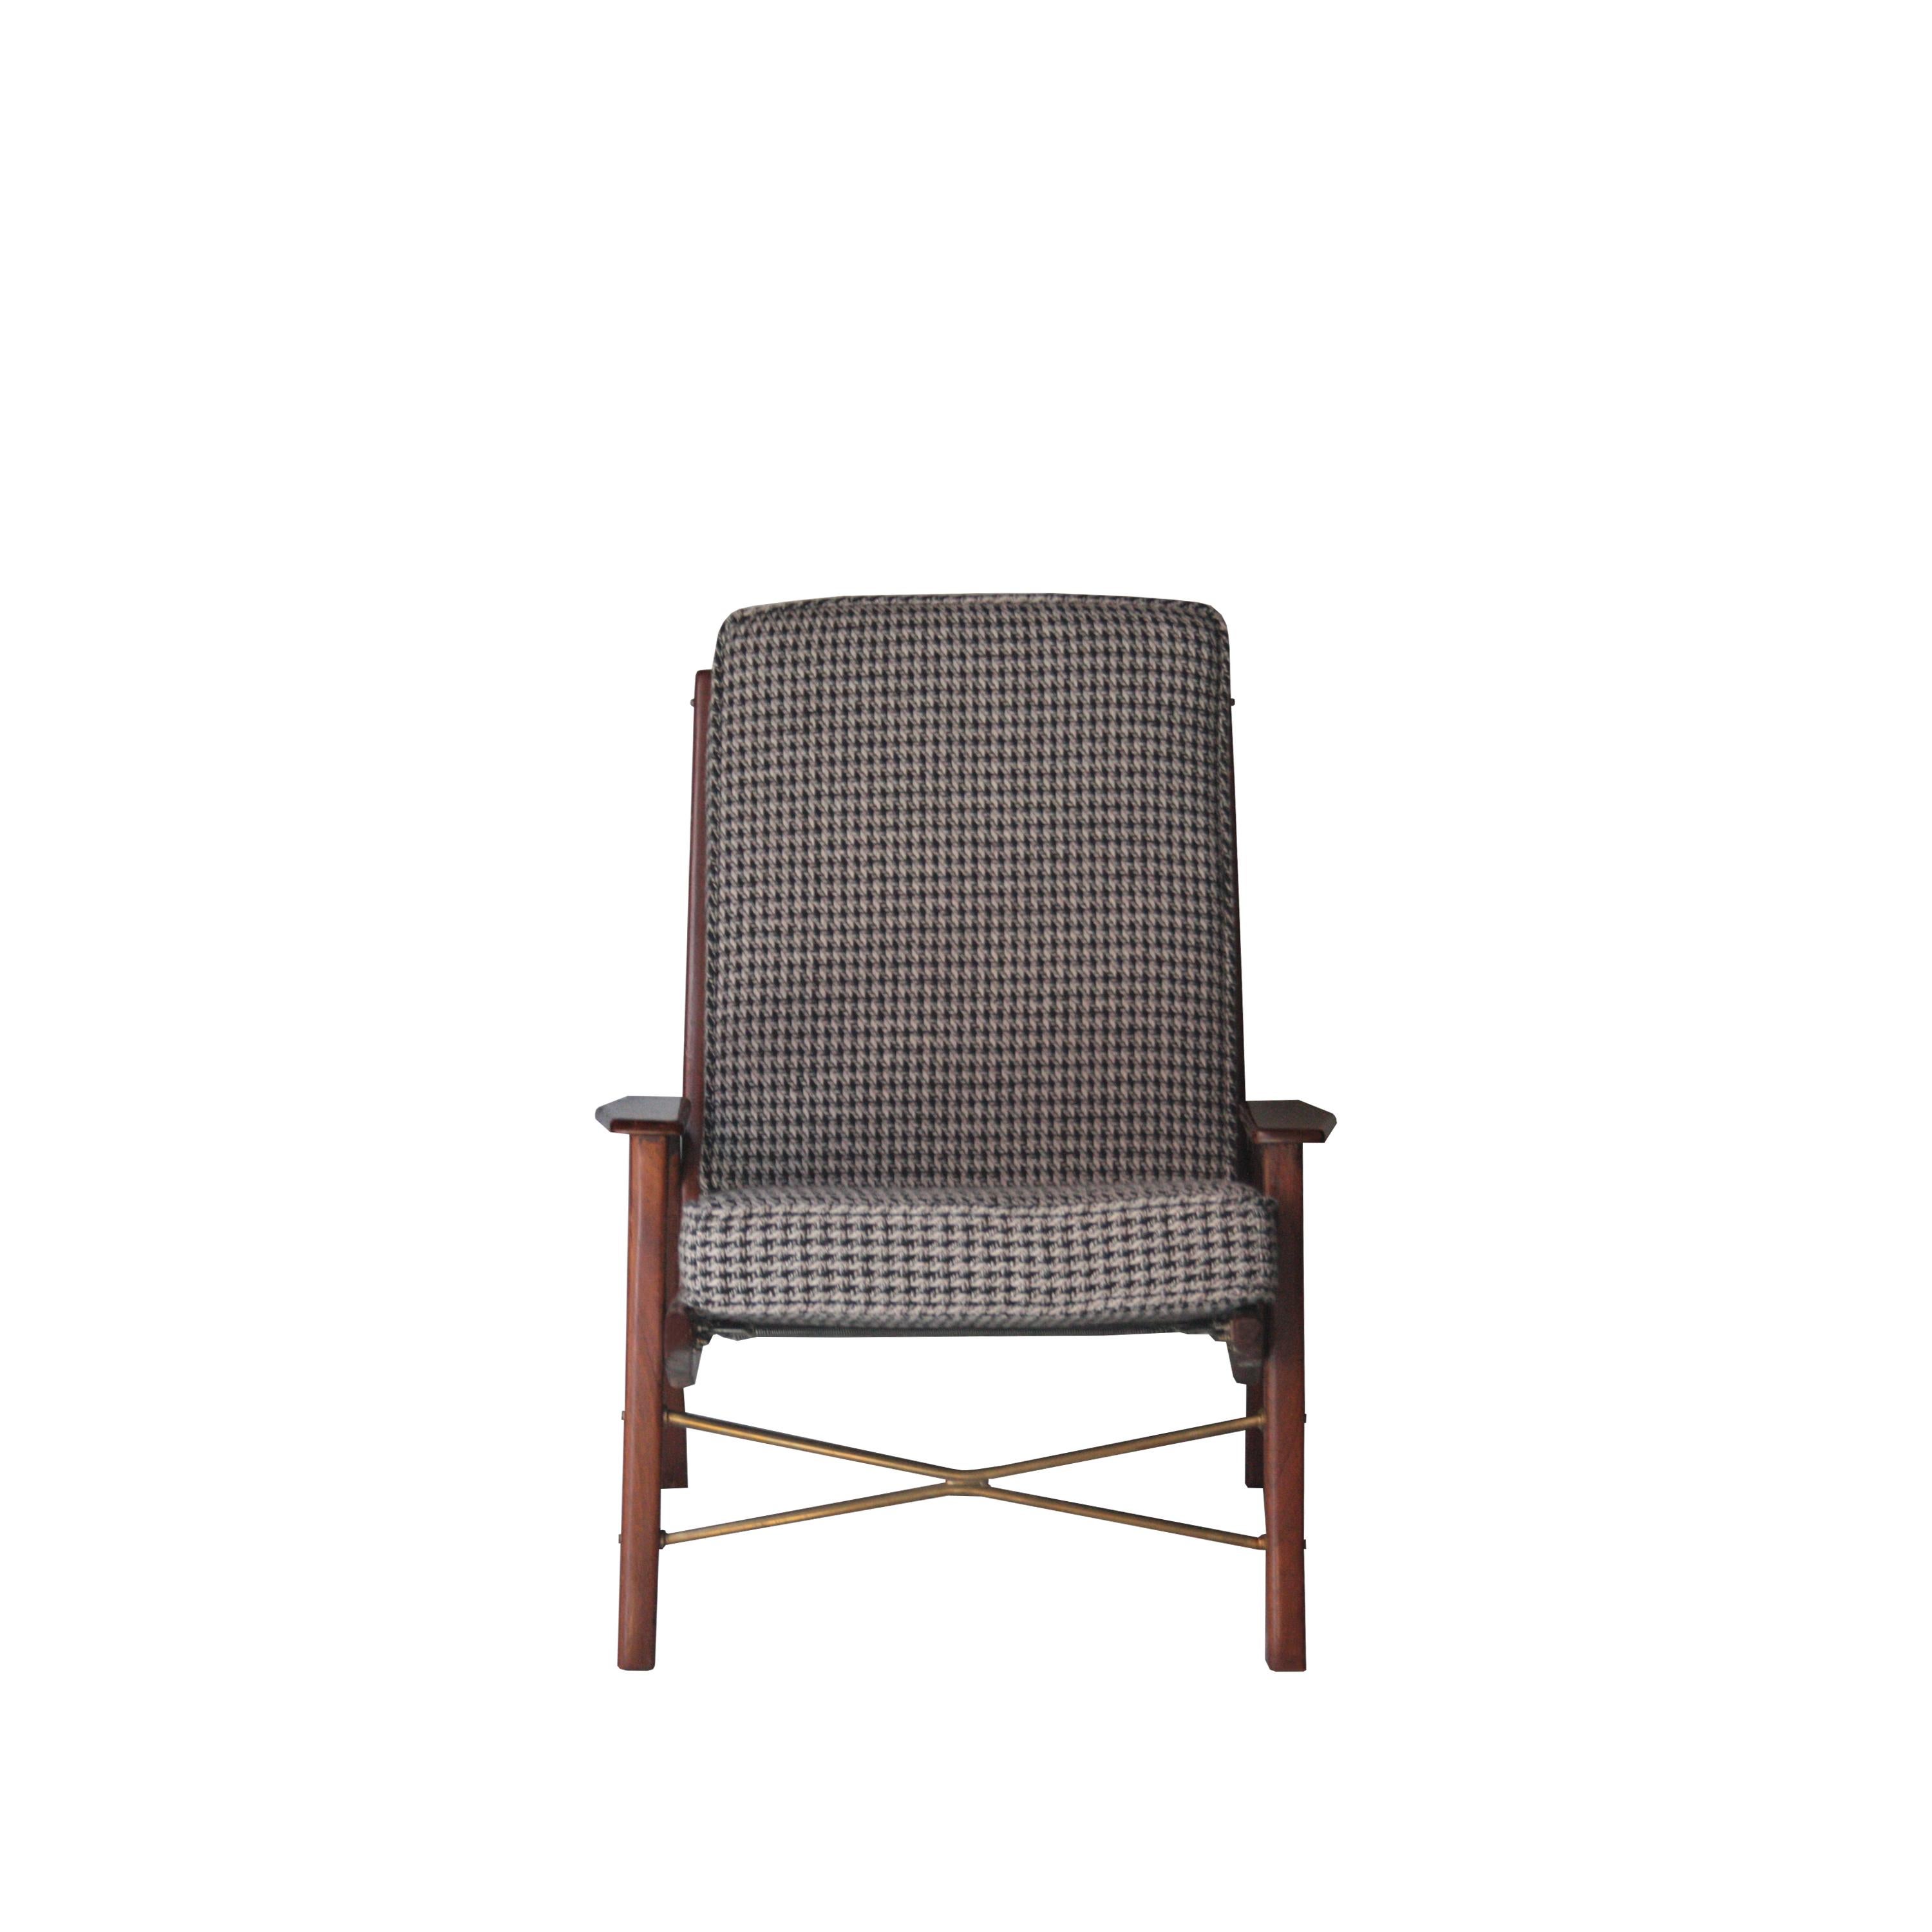 Von René-Jean-Caillette entworfener Sessel mit Holzstruktur und Messingdetails.
 